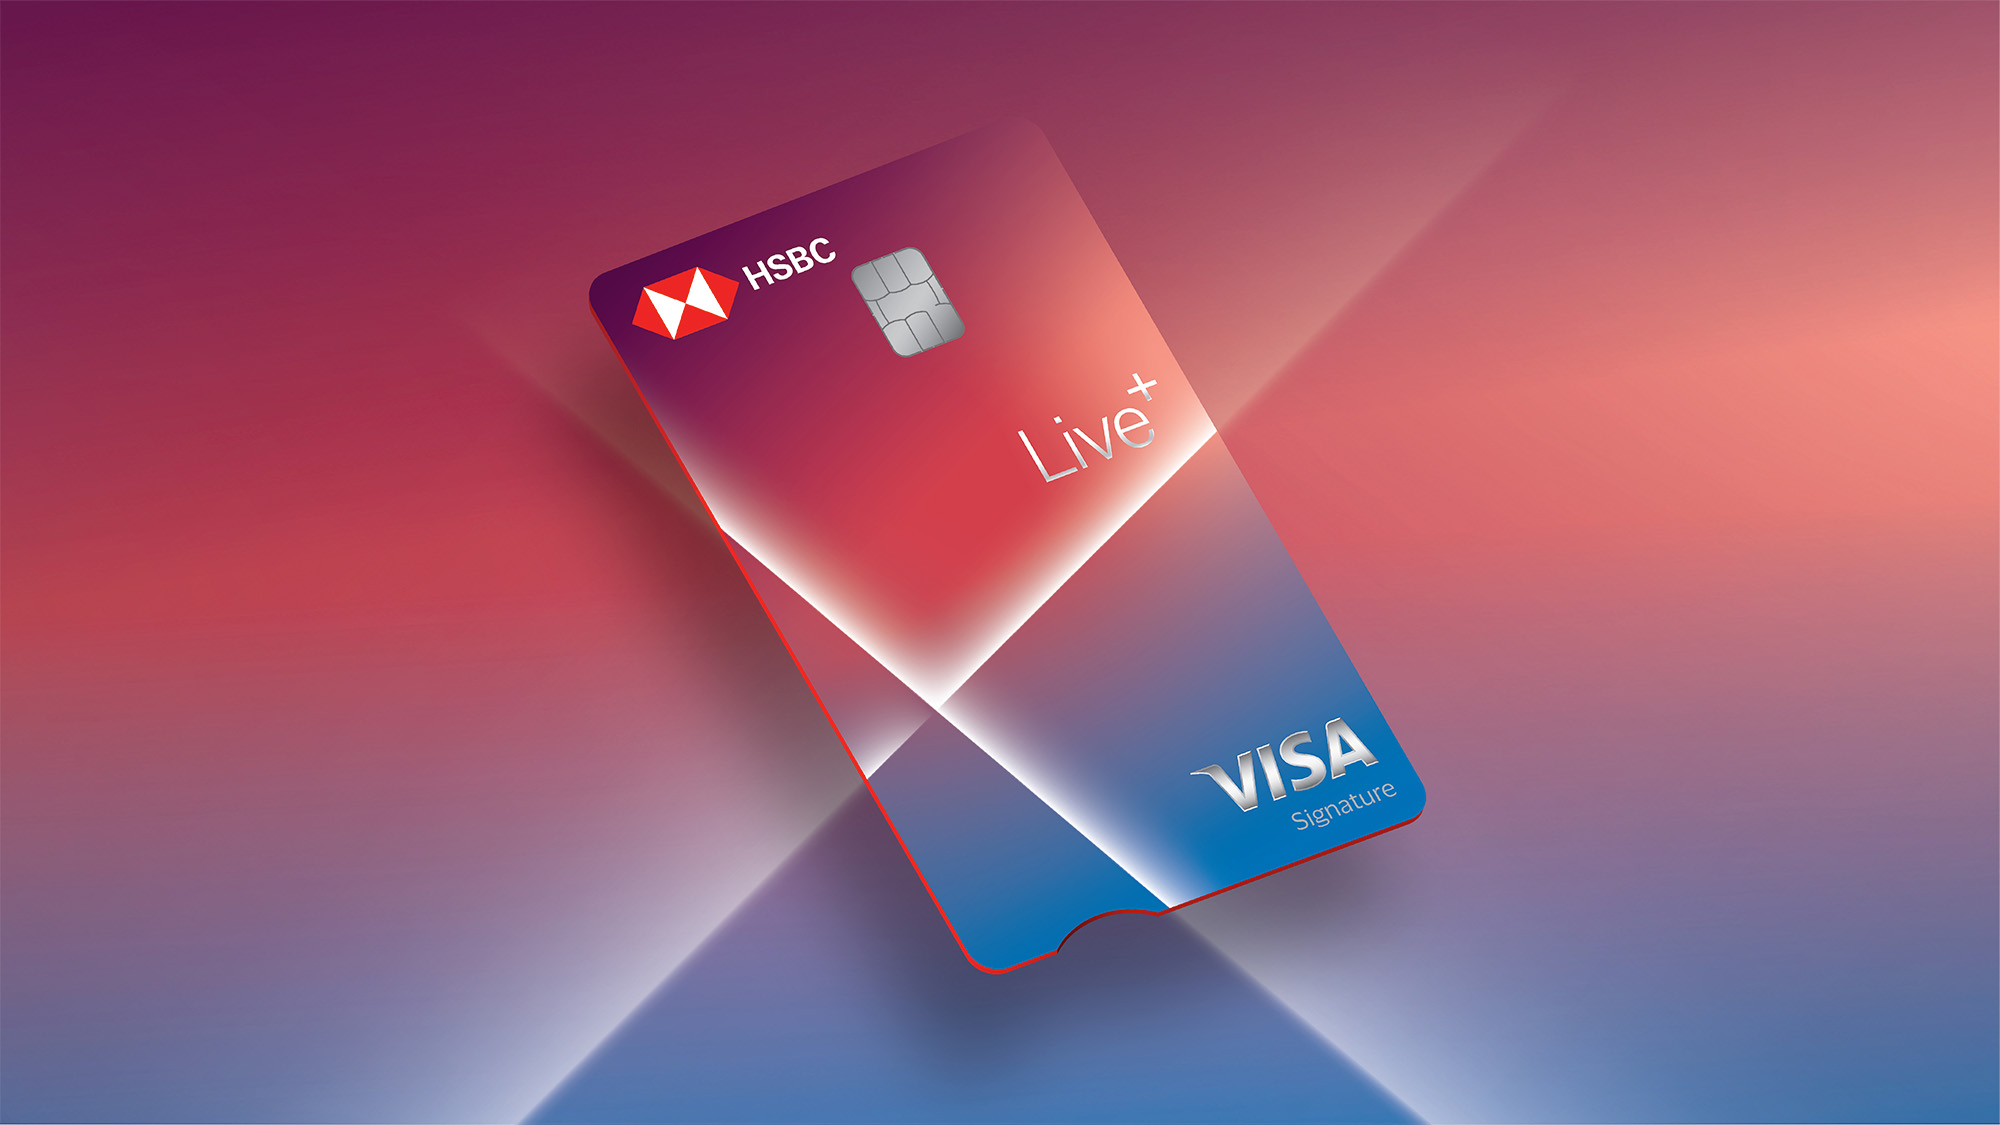 匯豐 Live+ 現金回饋卡 優惠 推薦 信用卡